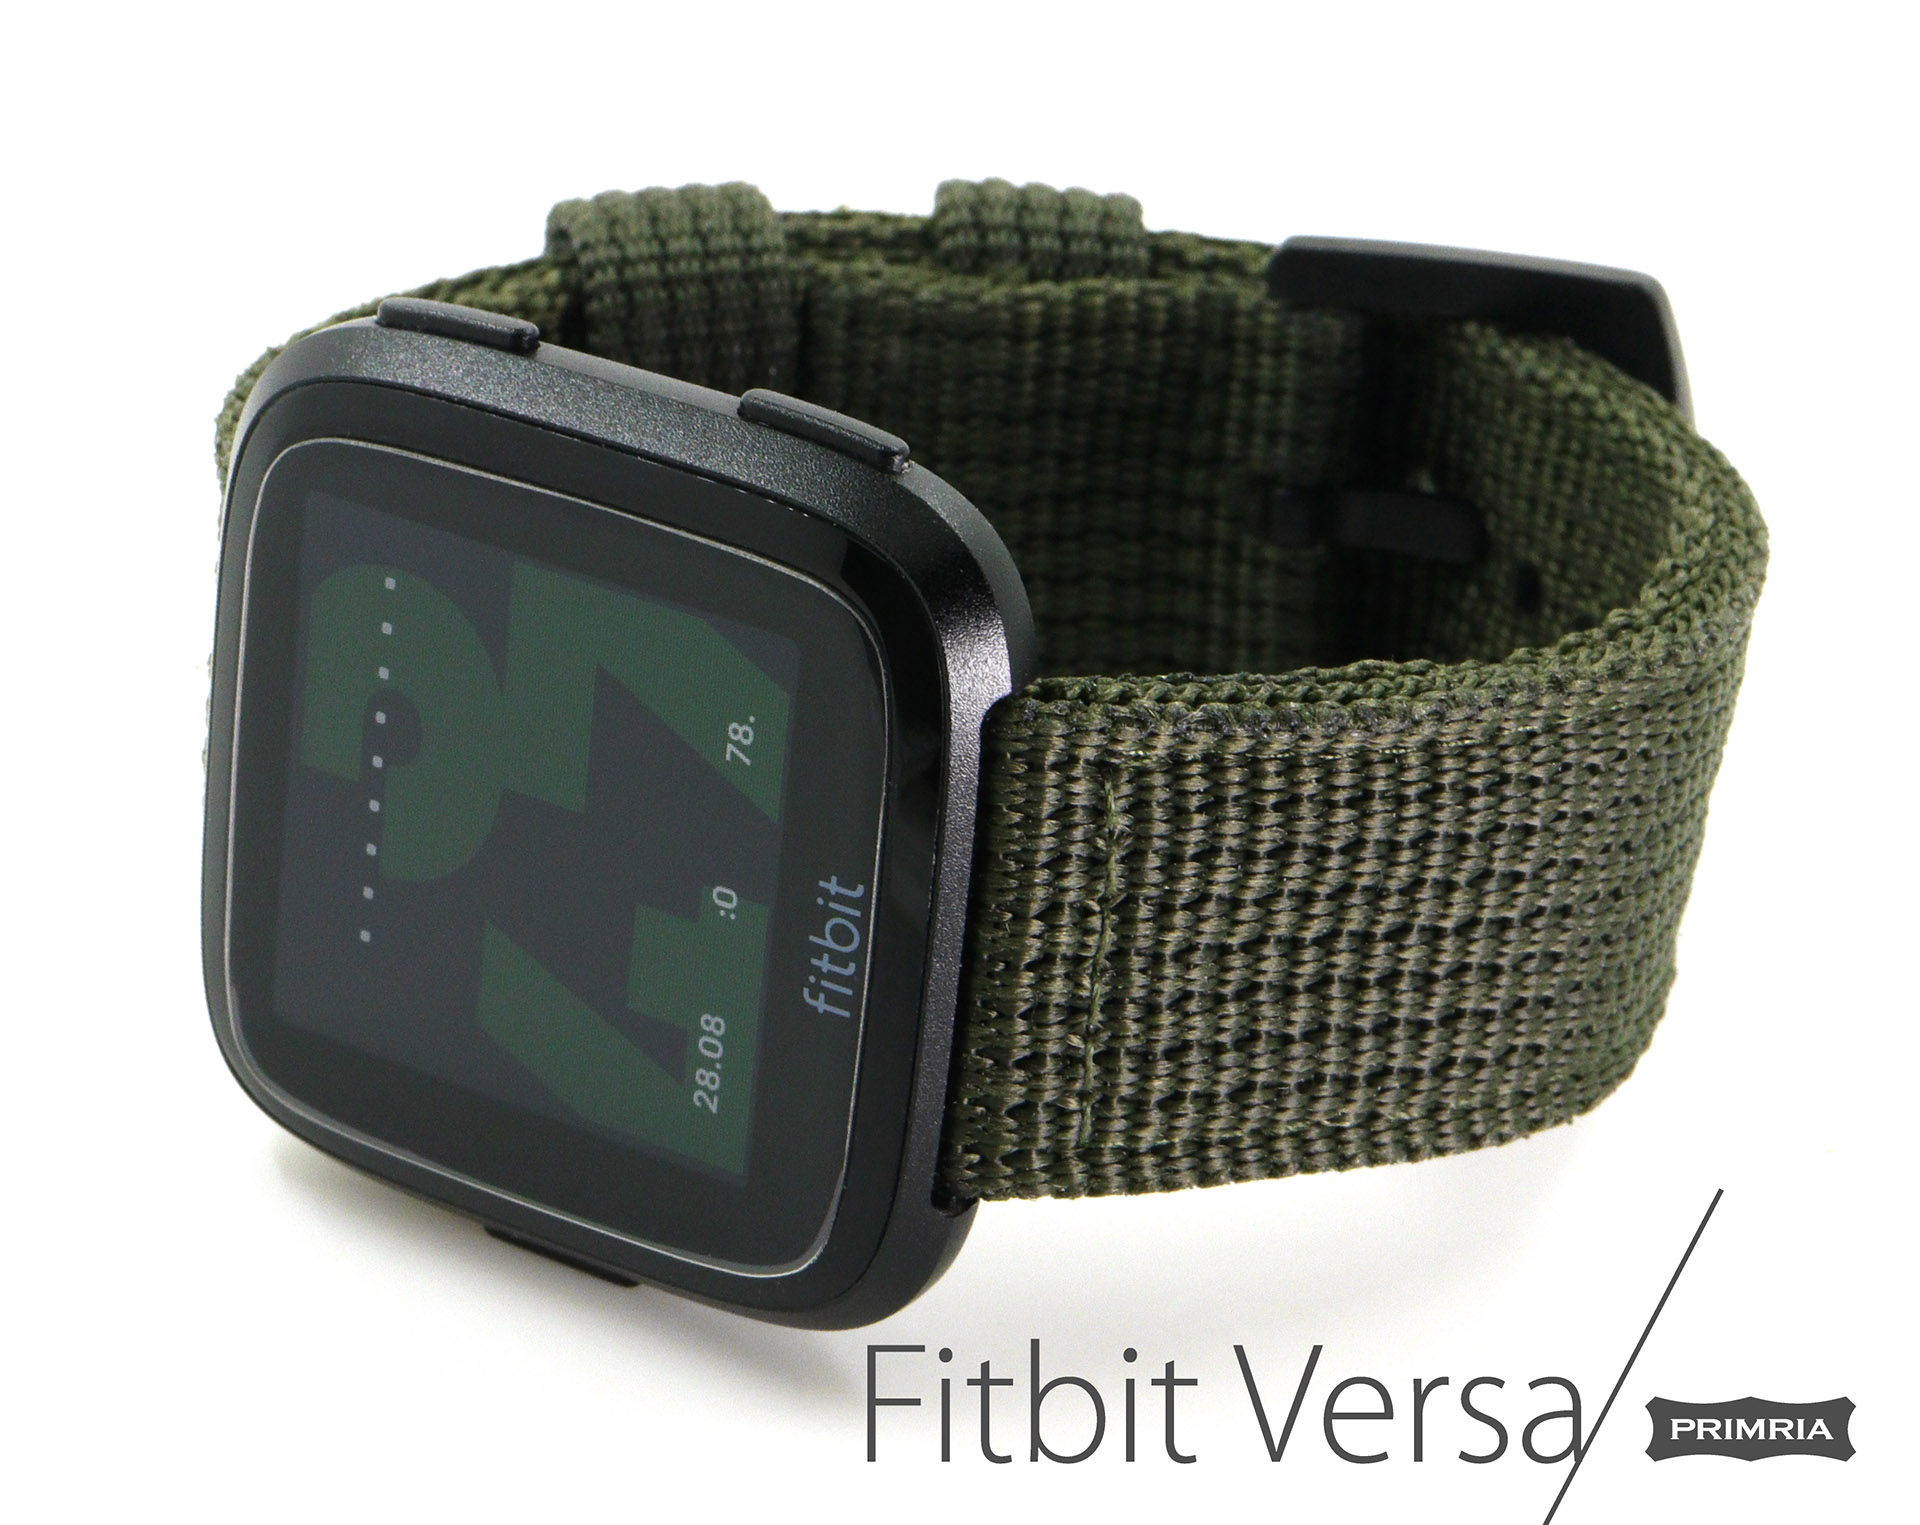 Nylon Strap For Fitbit Versa 4/ Sense 2 Band Replacement Loop Wristband For Fitbit  Versa 3 / Fit bit sense Smart watch - AliExpress